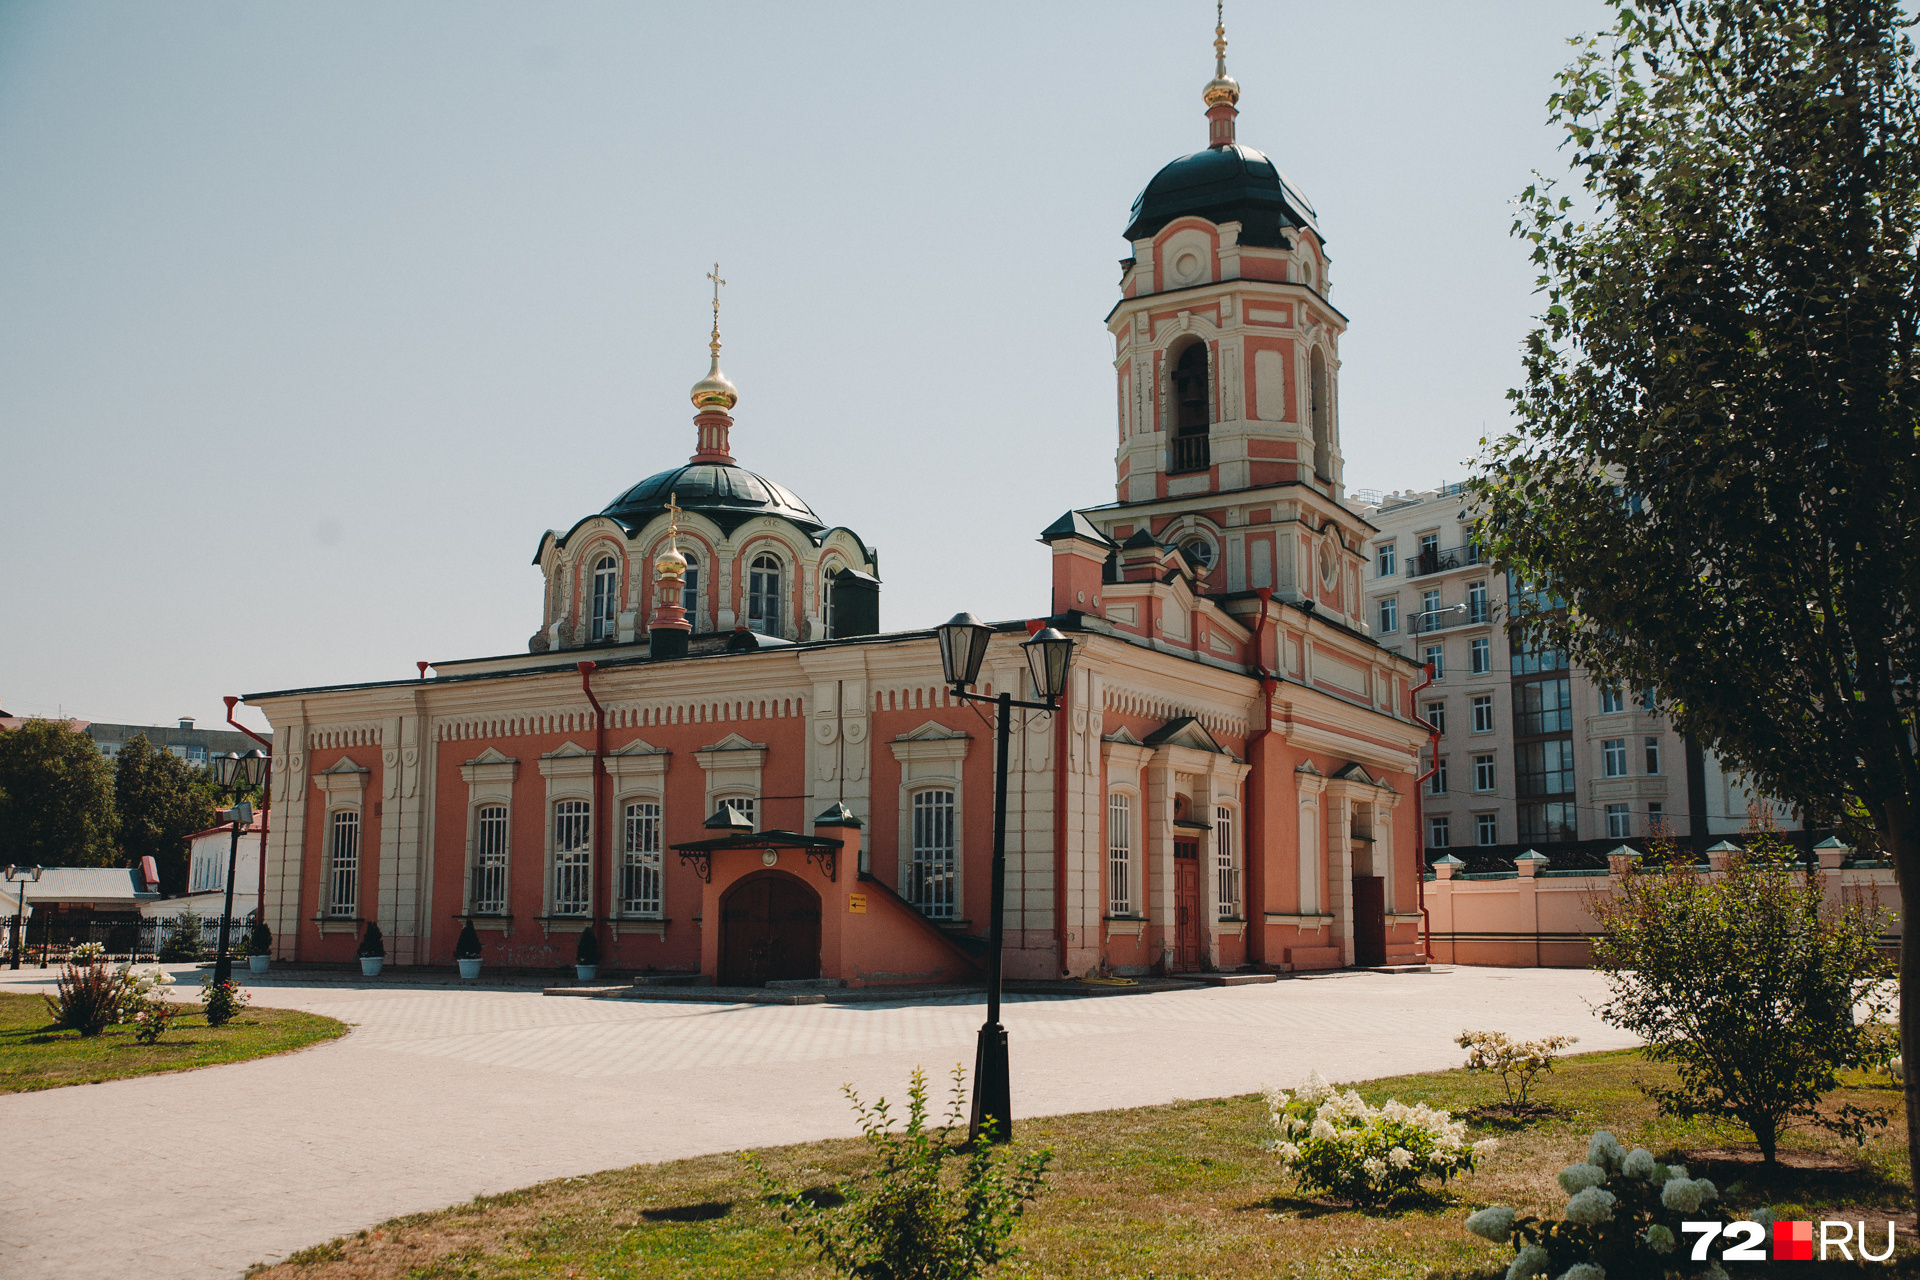 Ильинский монастырь построили в 1620 году. В советские годы в нем располагались ломбард и ликеро-водочный завод